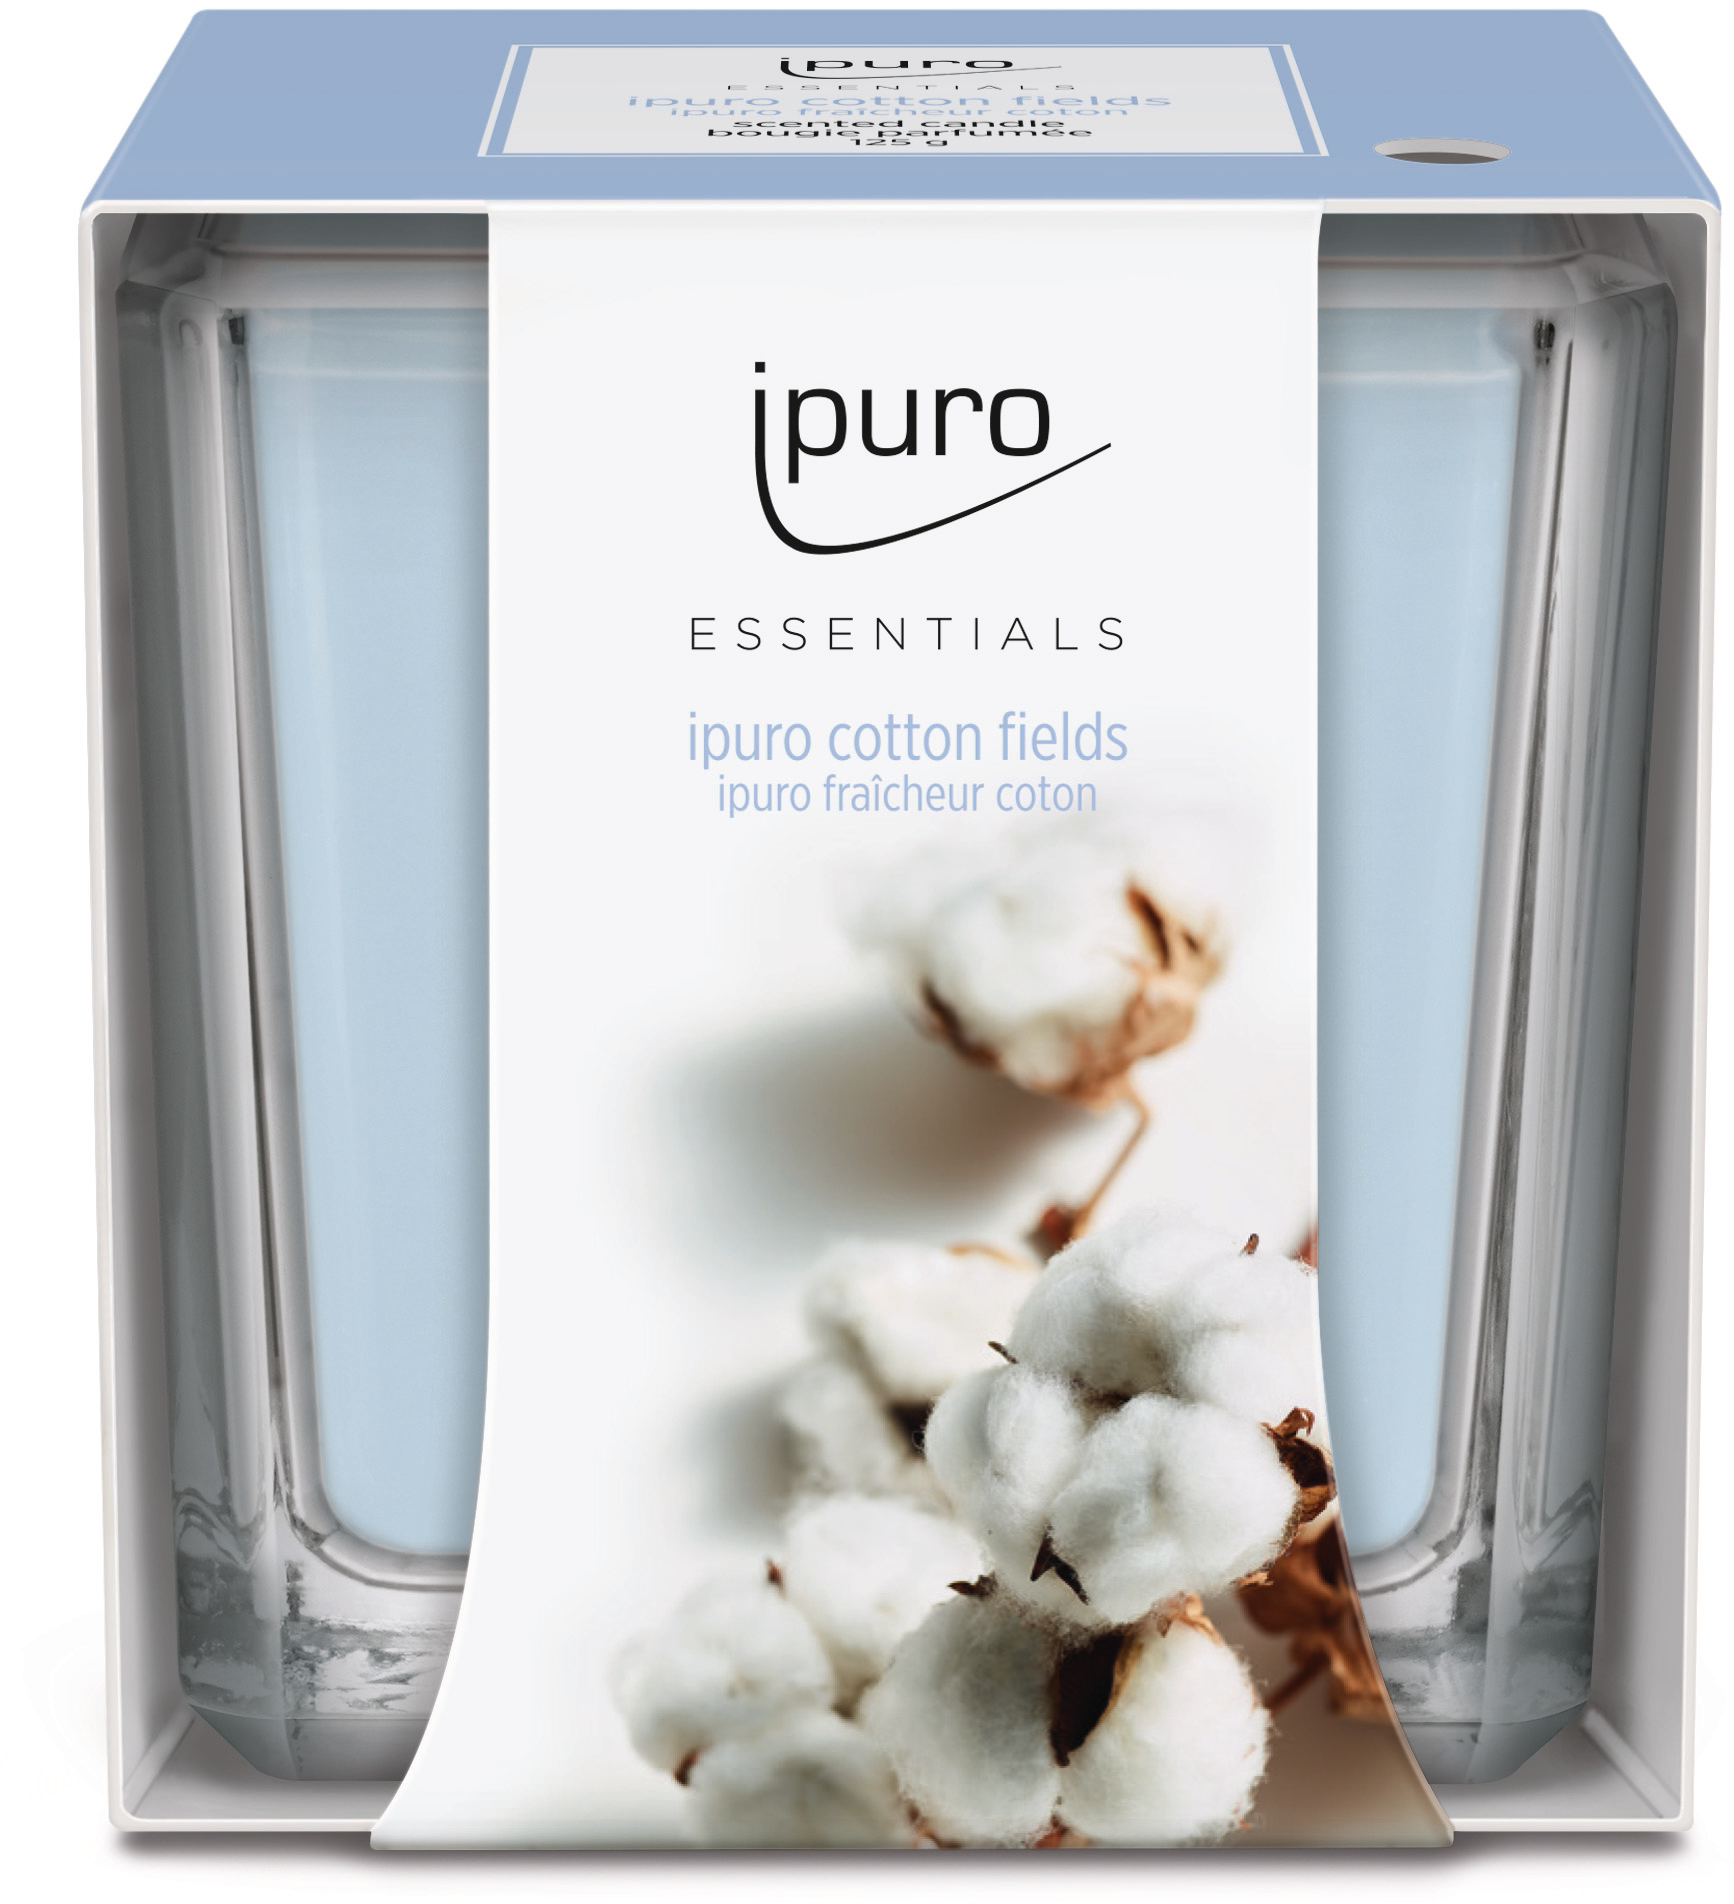 IPURO Bougie parfumée Essentials 051.1200 cotton fields 125g cotton fields 125g